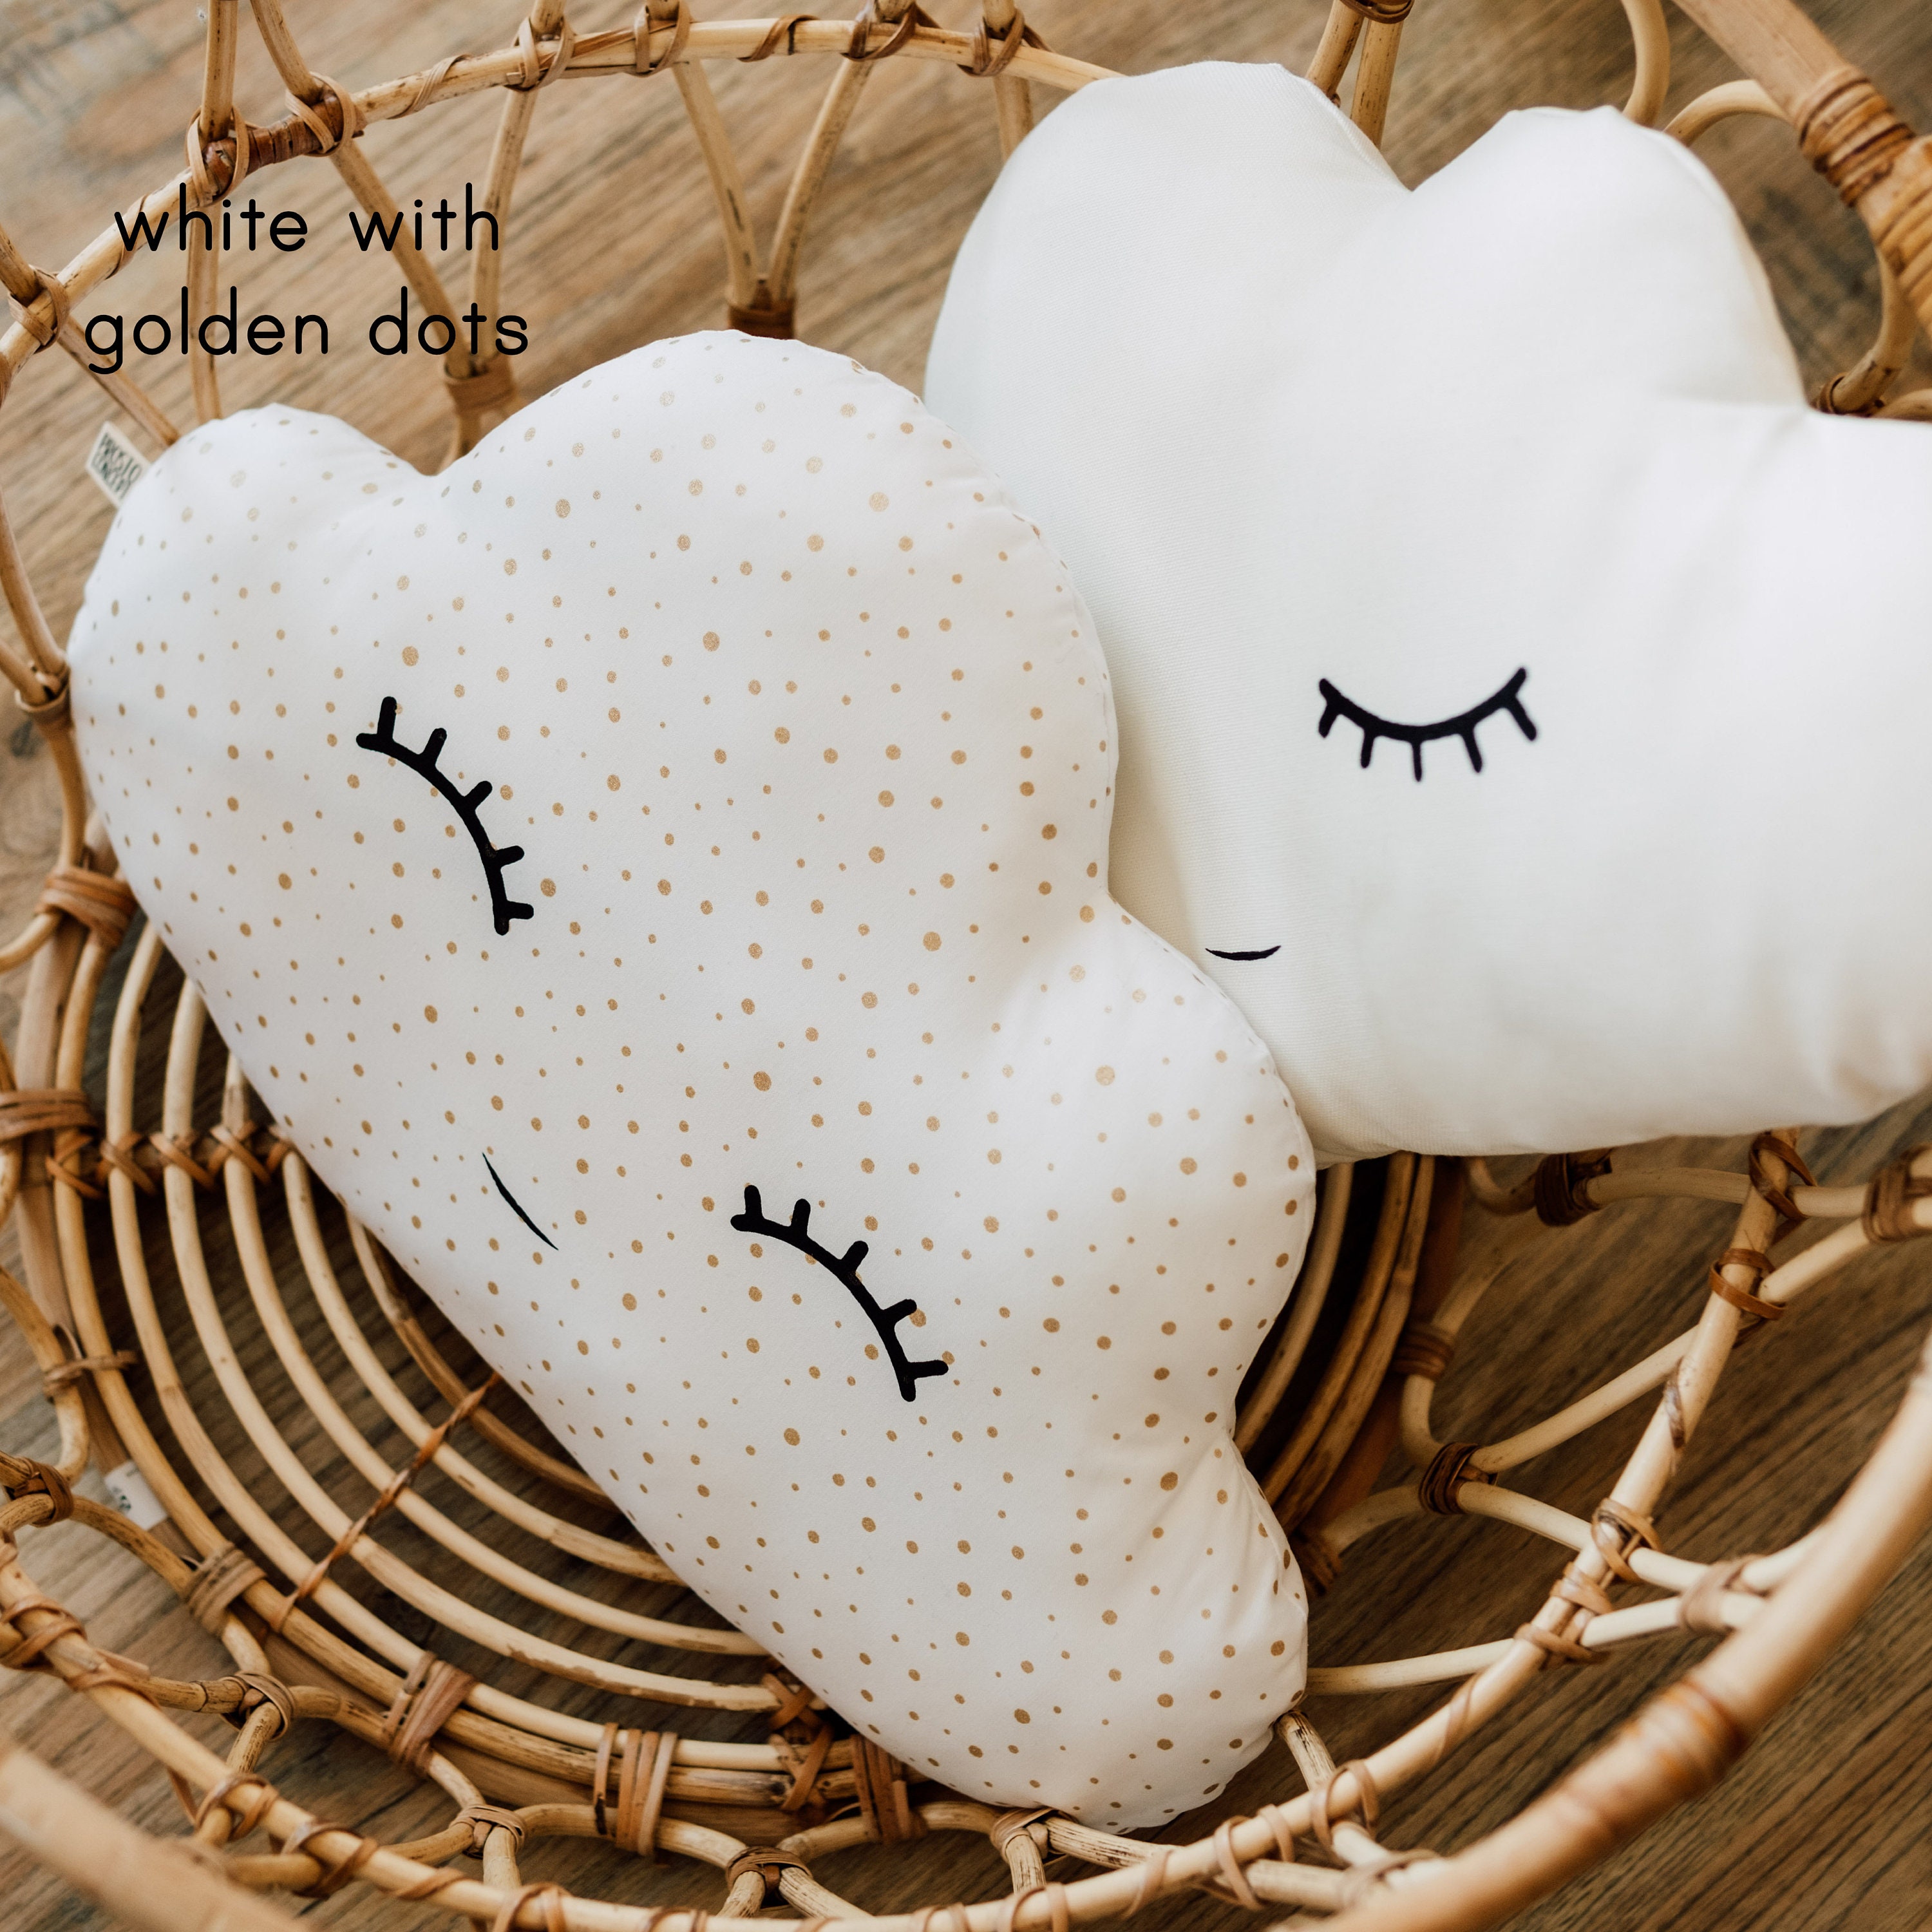 Cloud cushion - honey sweet dots natural